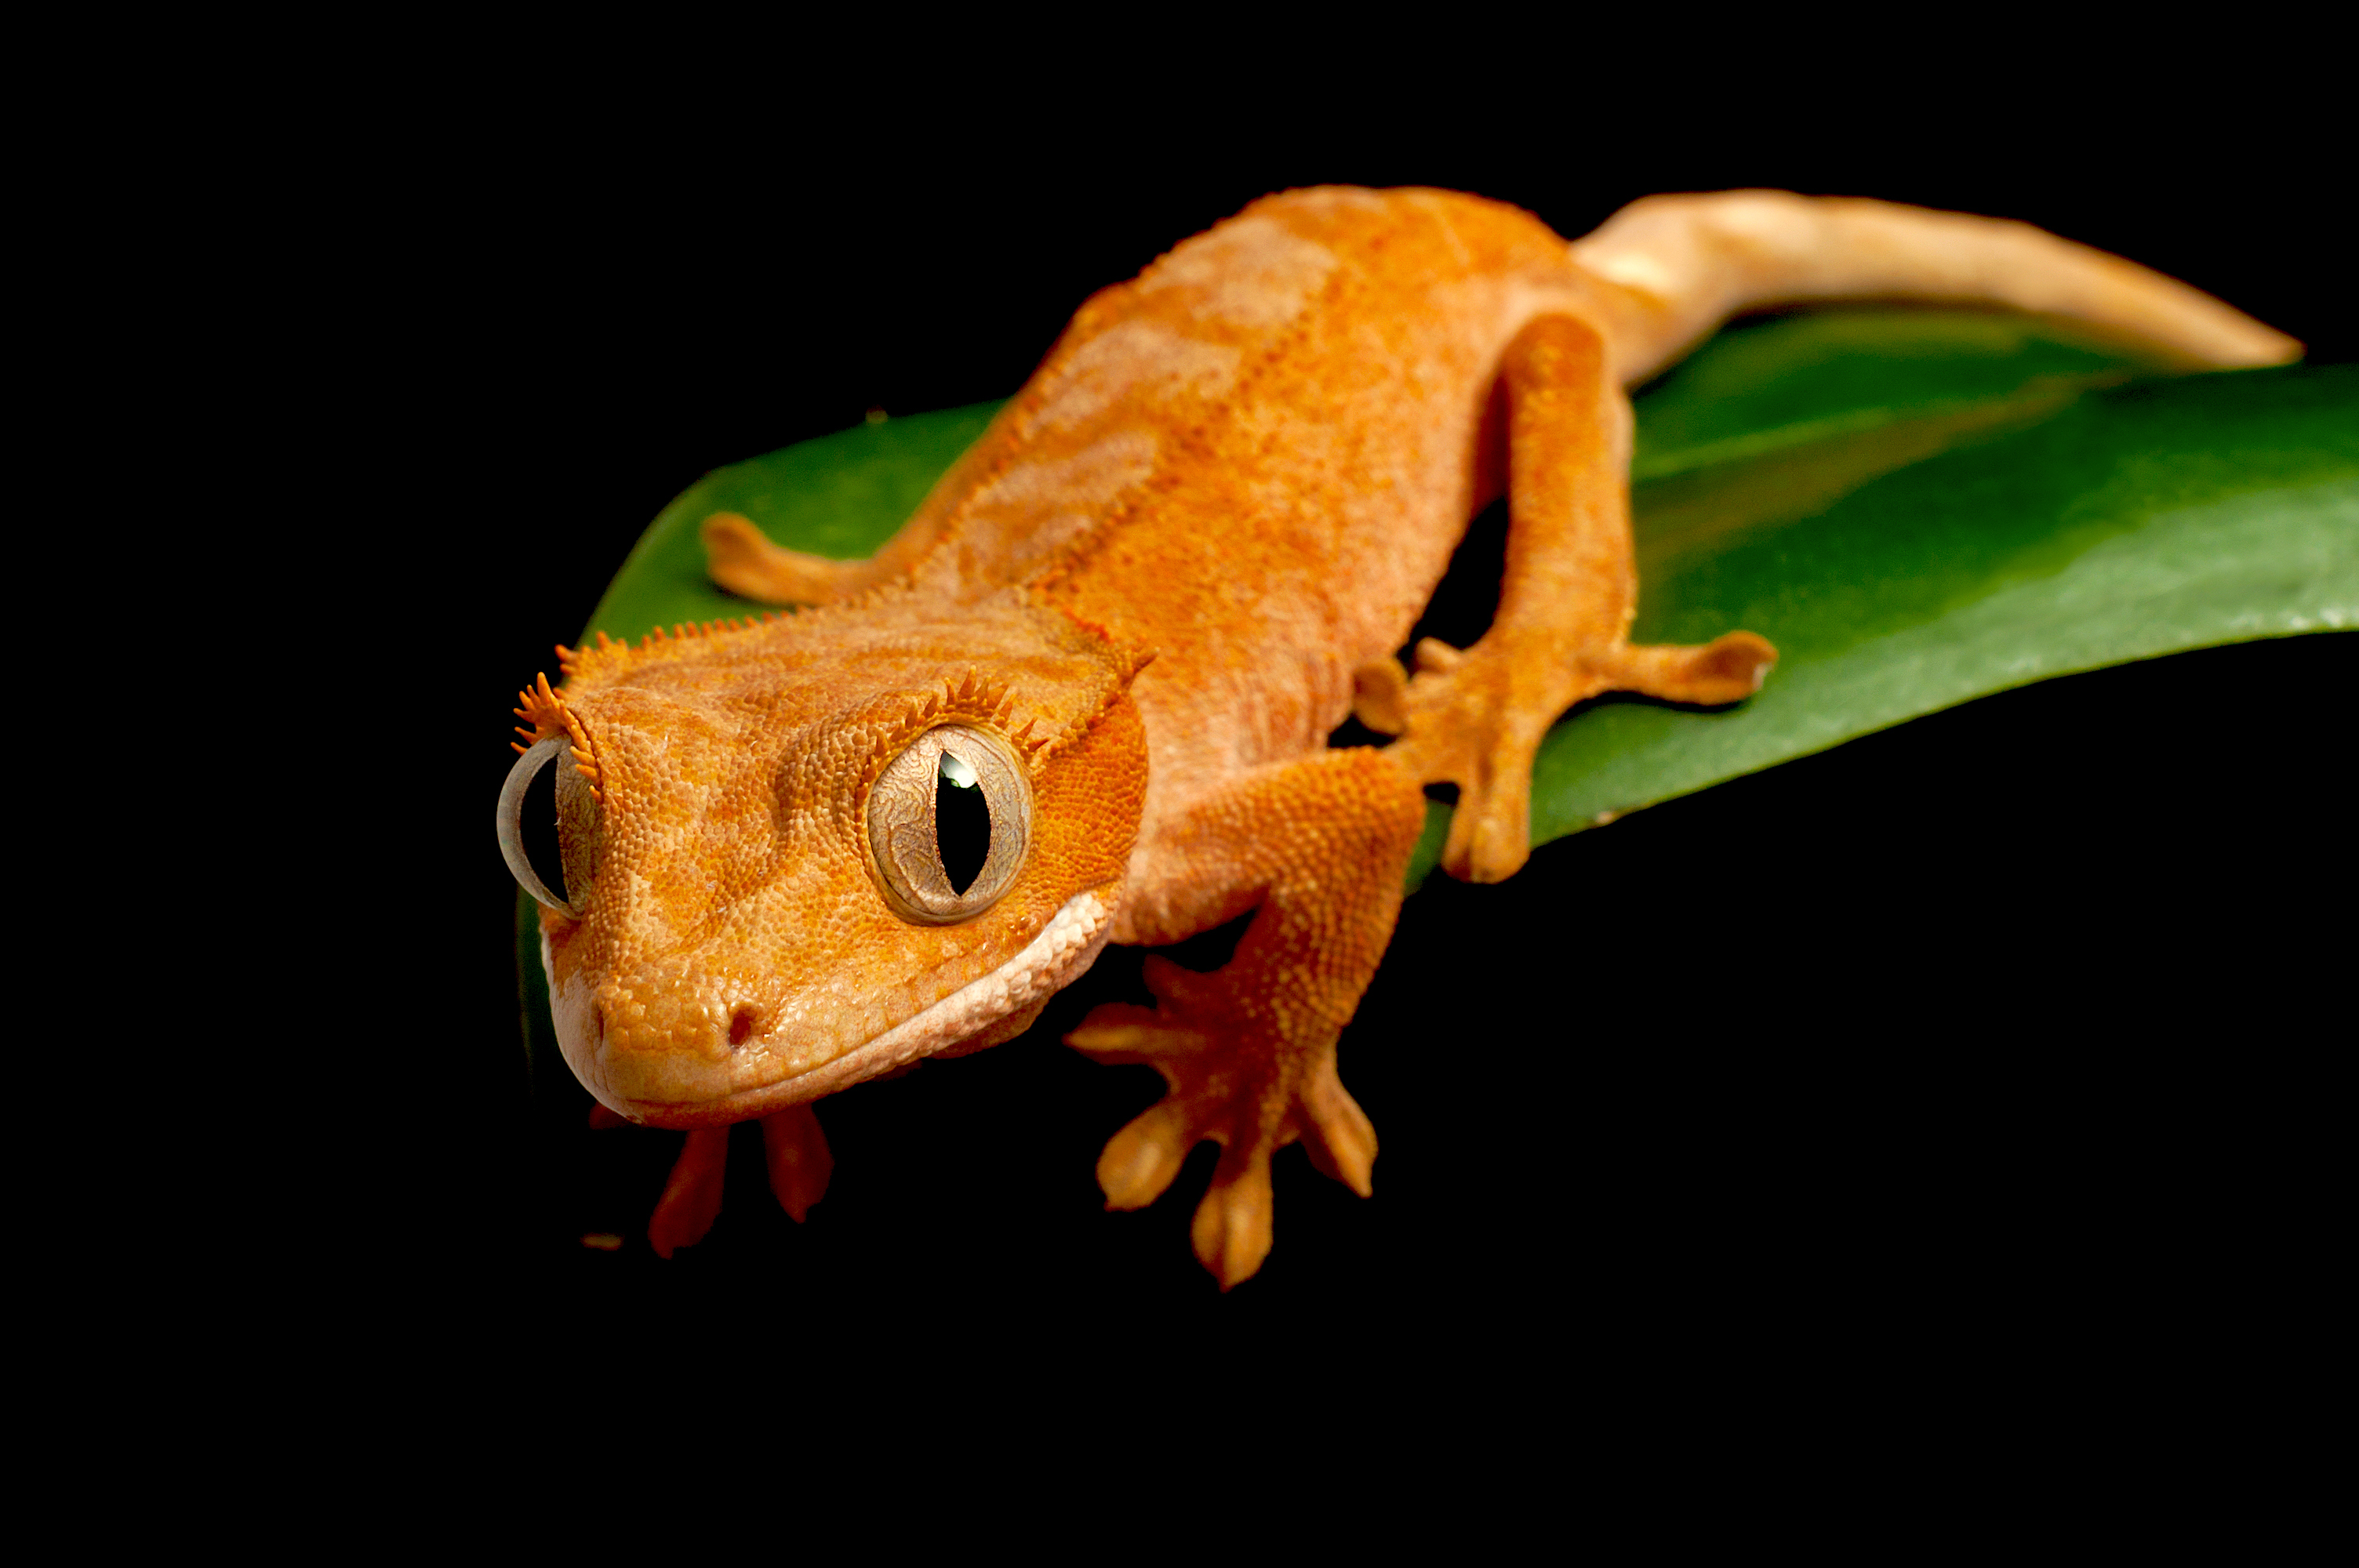 Crested Gecko (Correlophus ciliatus)